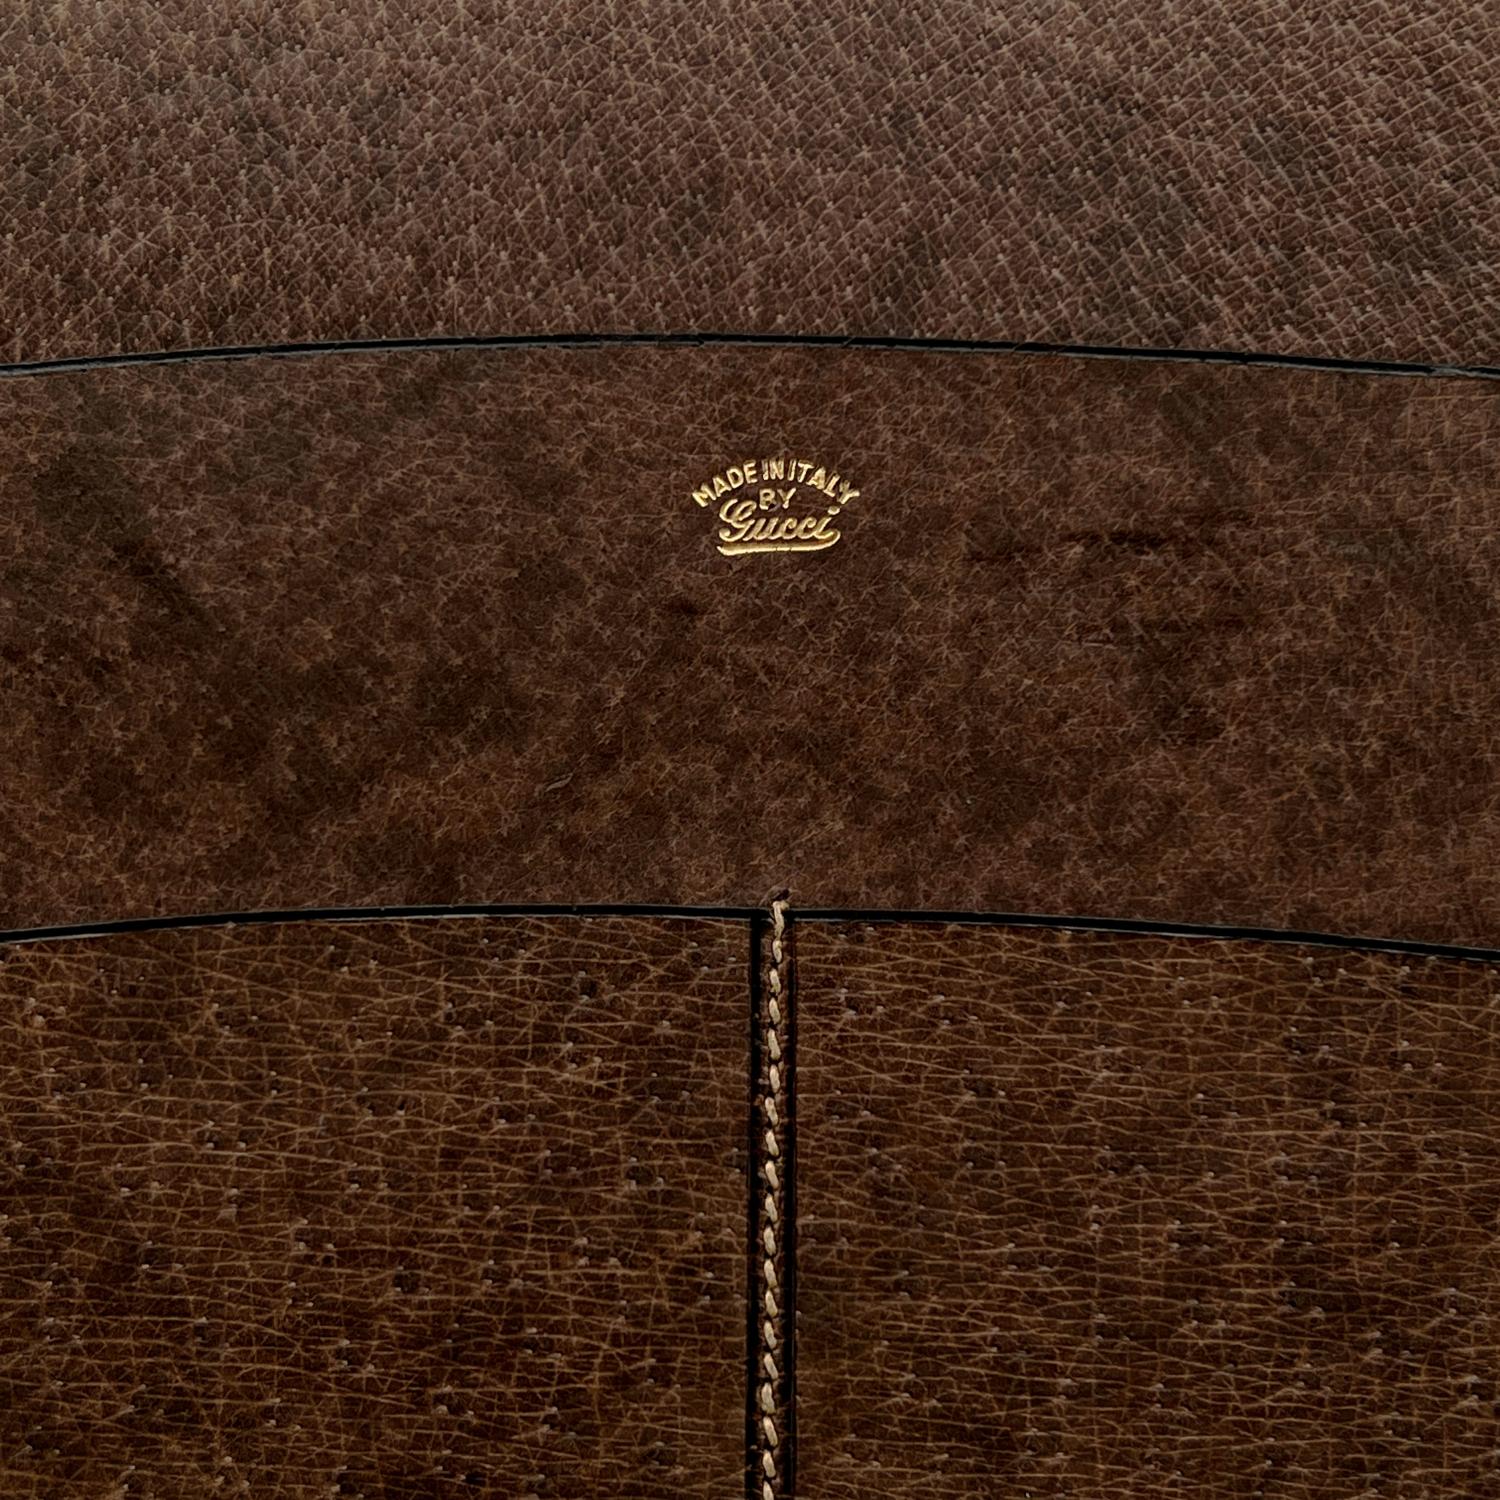 Gray Gucci Vintage Brown Leather Desk Set Blotter Pen Holder Opener